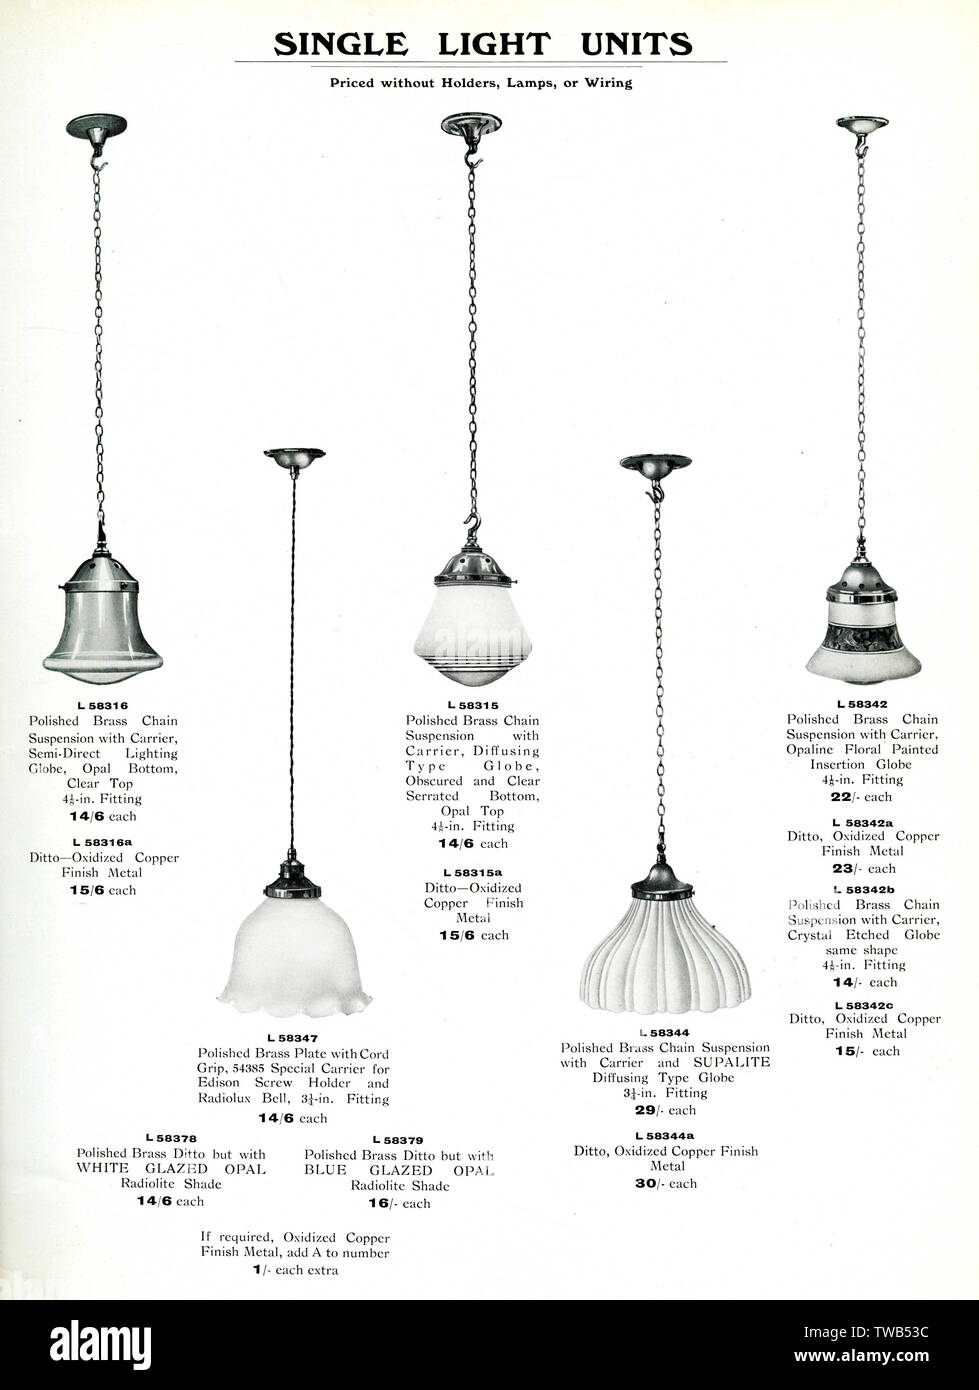 Catalogo lampade elettriche, unità a luce singola Foto Stock